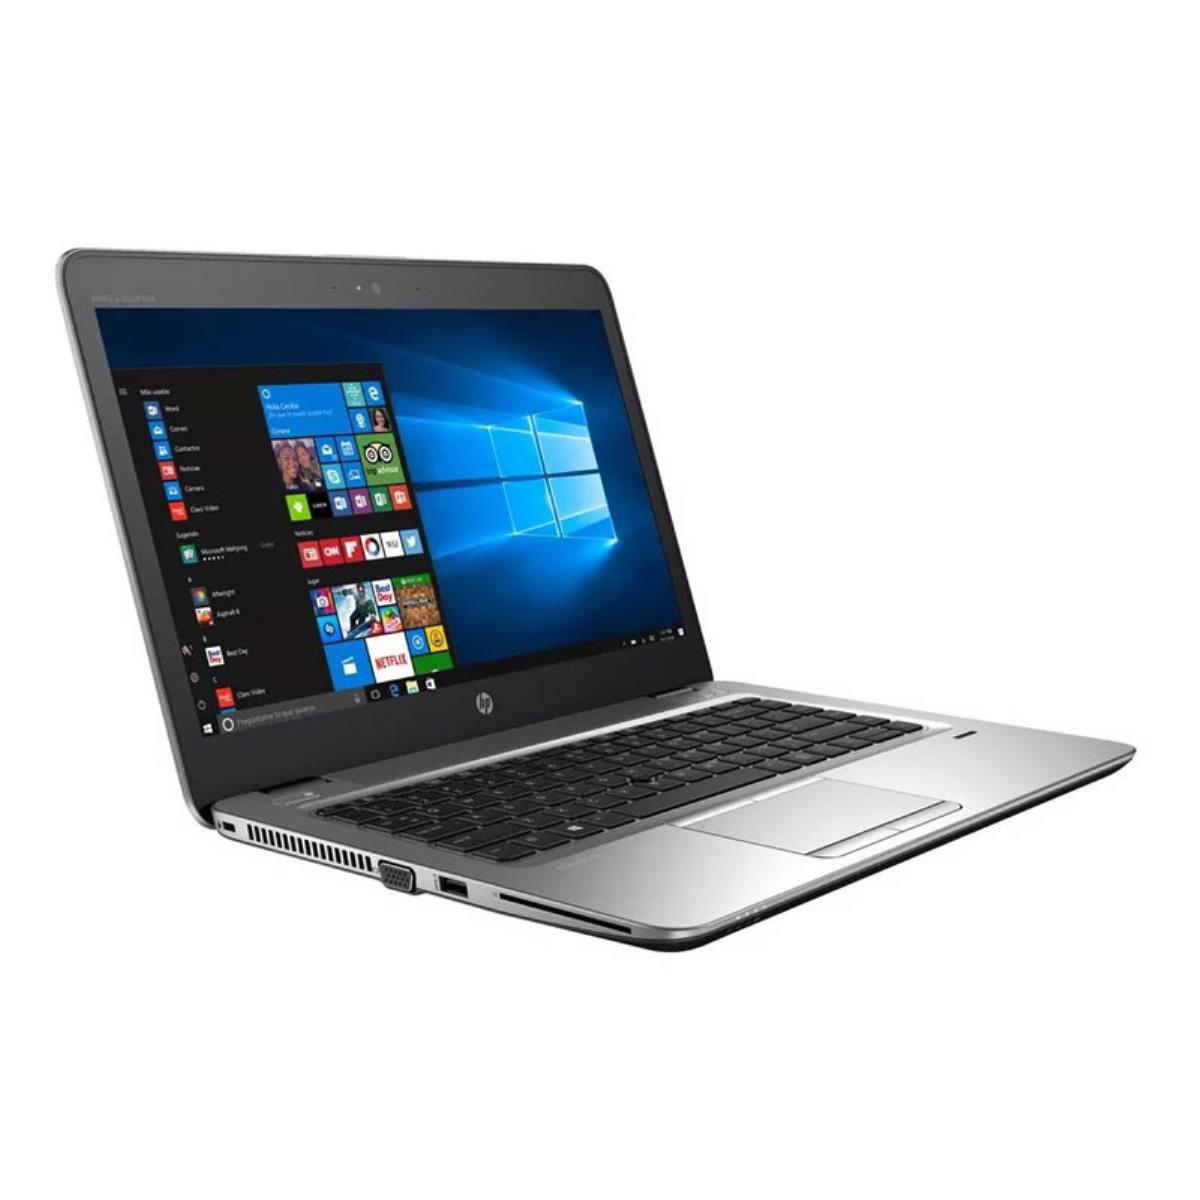 Portátil Ultrabook HP Elitebook 840 G3 GRADO B con teclado en castellano (Intel Core i5 6200U 2.3Ghz/8GB/240SSD-M.2/14HD/NO-DVD/W10P) Preinstalado